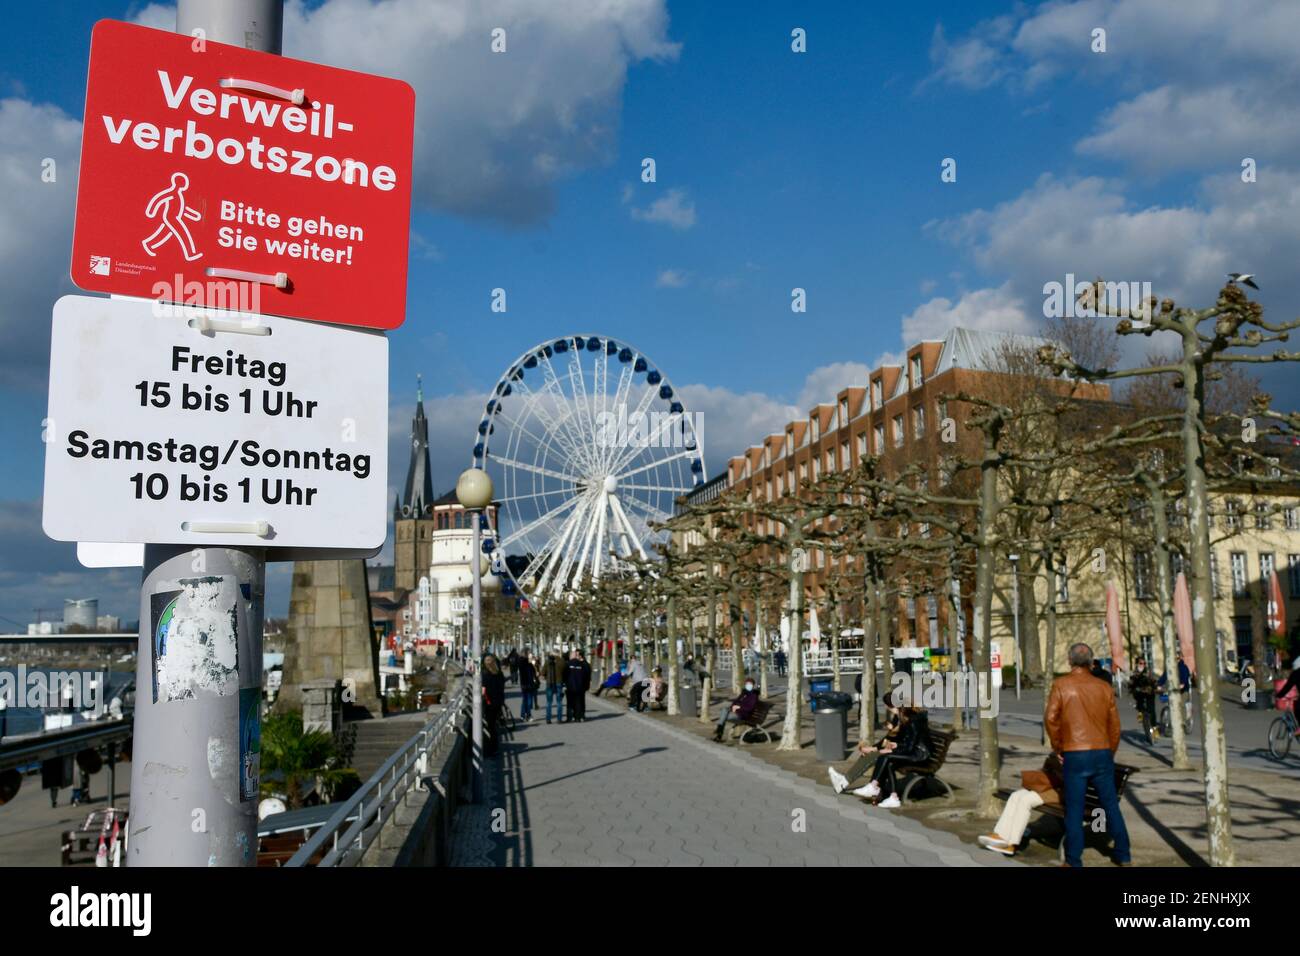 Düsseldorf, NRW Allemagne, 26 février 2021, Corona, "S'il vous plaît marcher dessus": En raison de la foule des gens le week-end dernier, la ville de Düsseldorf a imposé une interdiction sur la promenade du Rhin dans la vieille ville. Cela s'applique le vendredi de 3 h 00 à 1 h 00 et le samedi/dimanche de 10 h 00 à 1 h 00. Il est toujours de 14 h 50 le vendredi et les gens utilisent le temps sur les bancs du parc. Banque D'Images